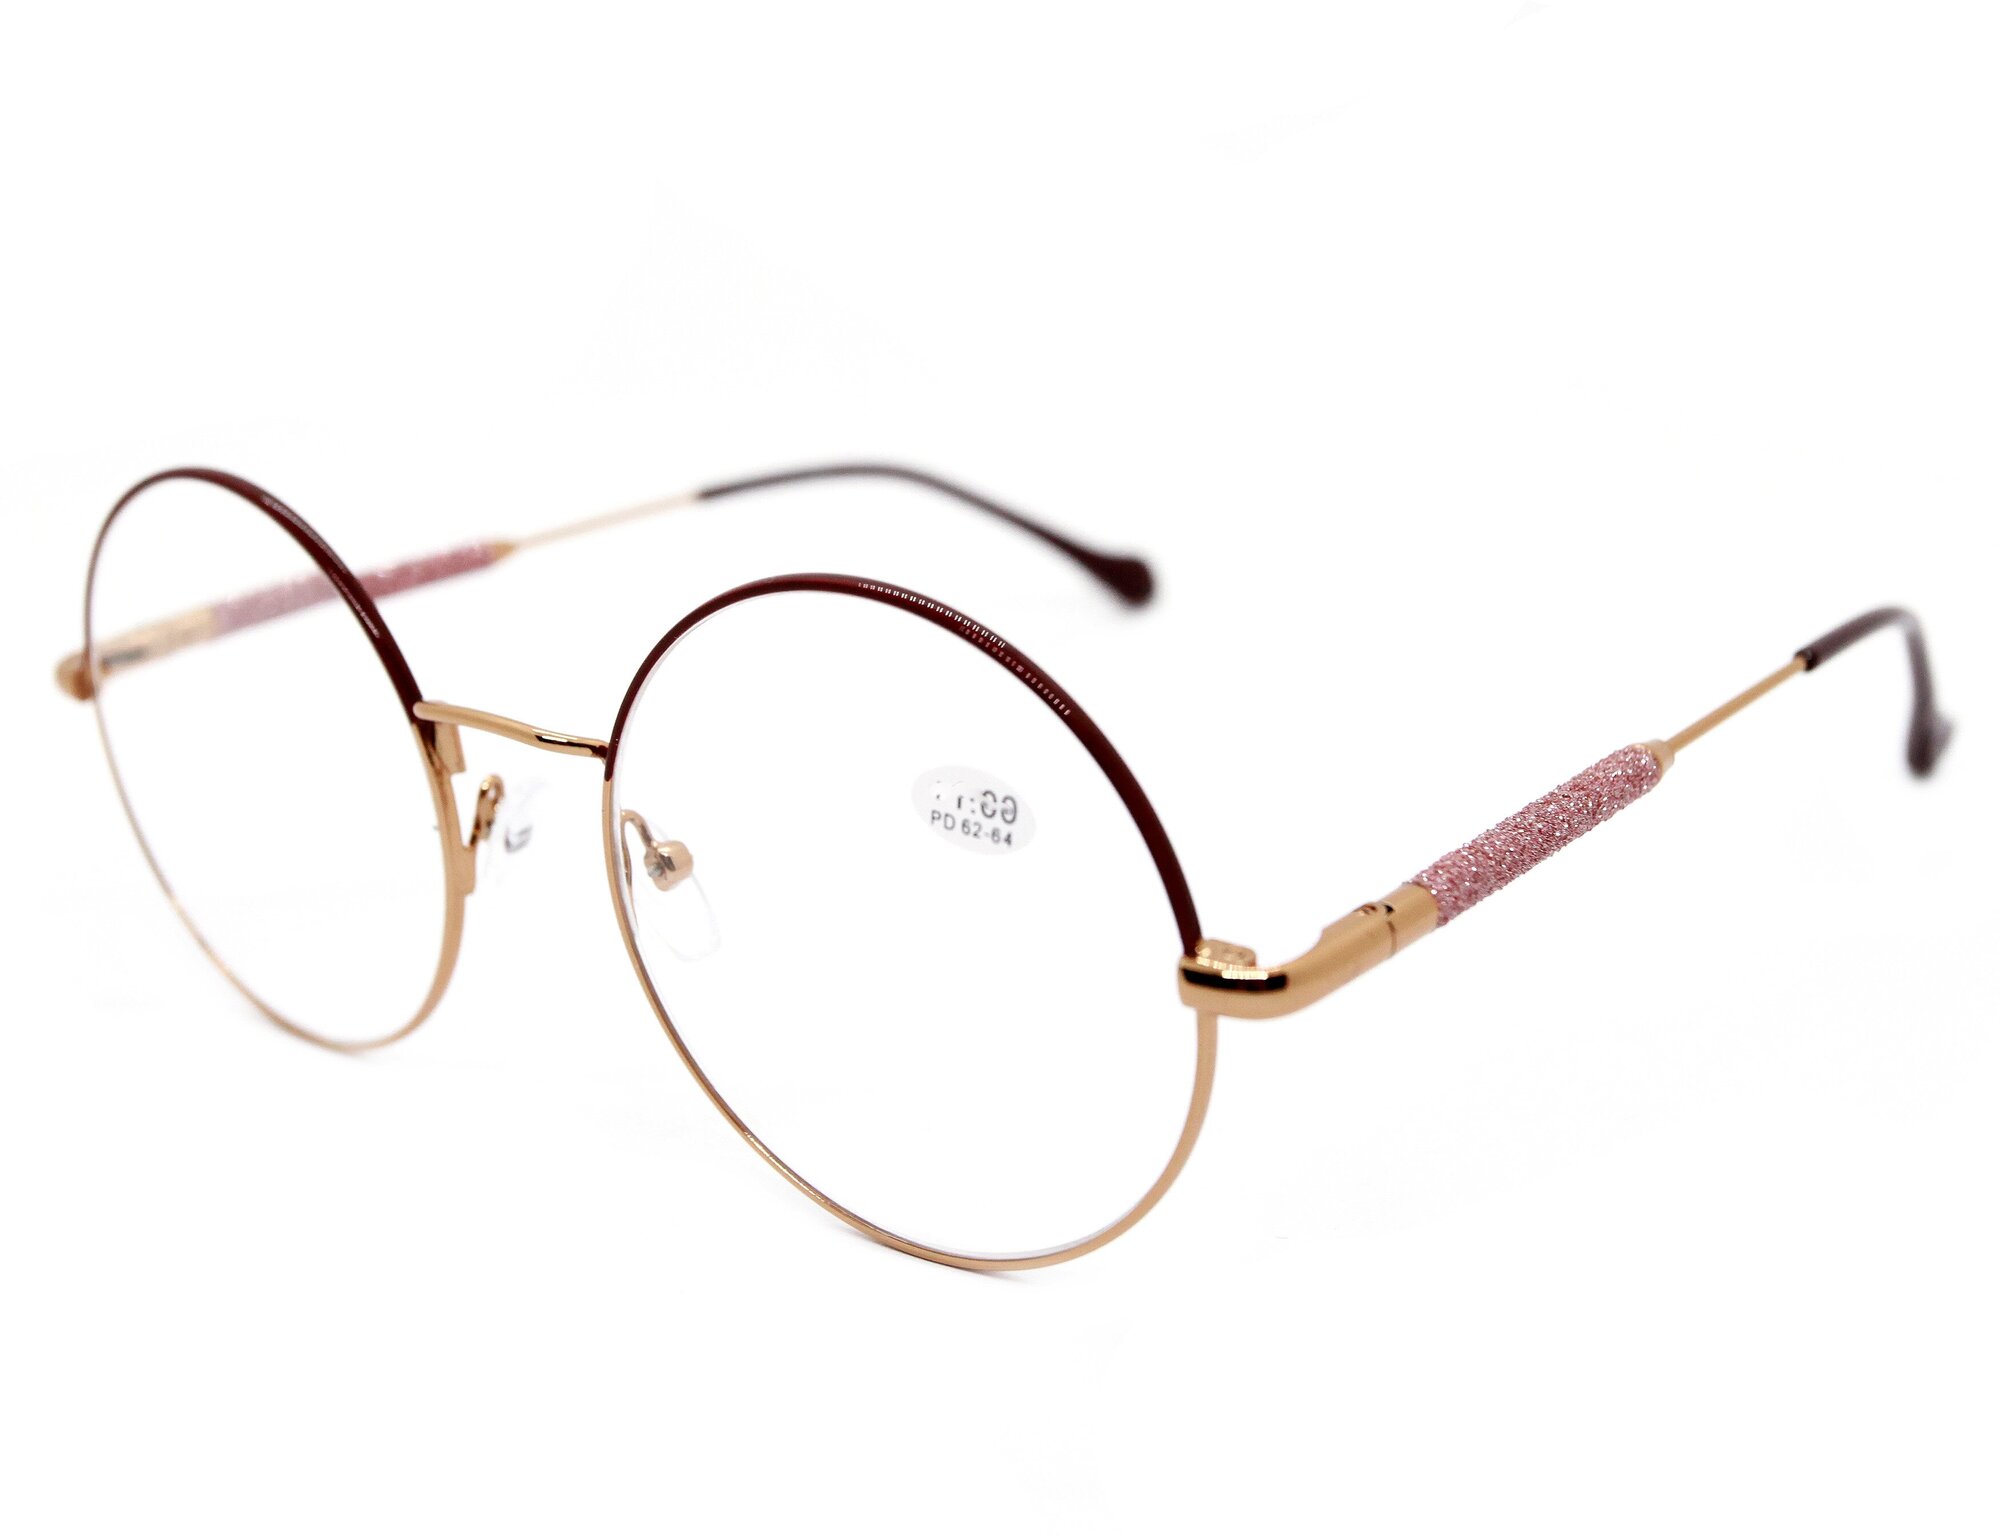 Готовые очки для зрения женские круглые (+4.00) GLODIATR 1908-C3 без футлярацвет бордовый РЦ 62-64